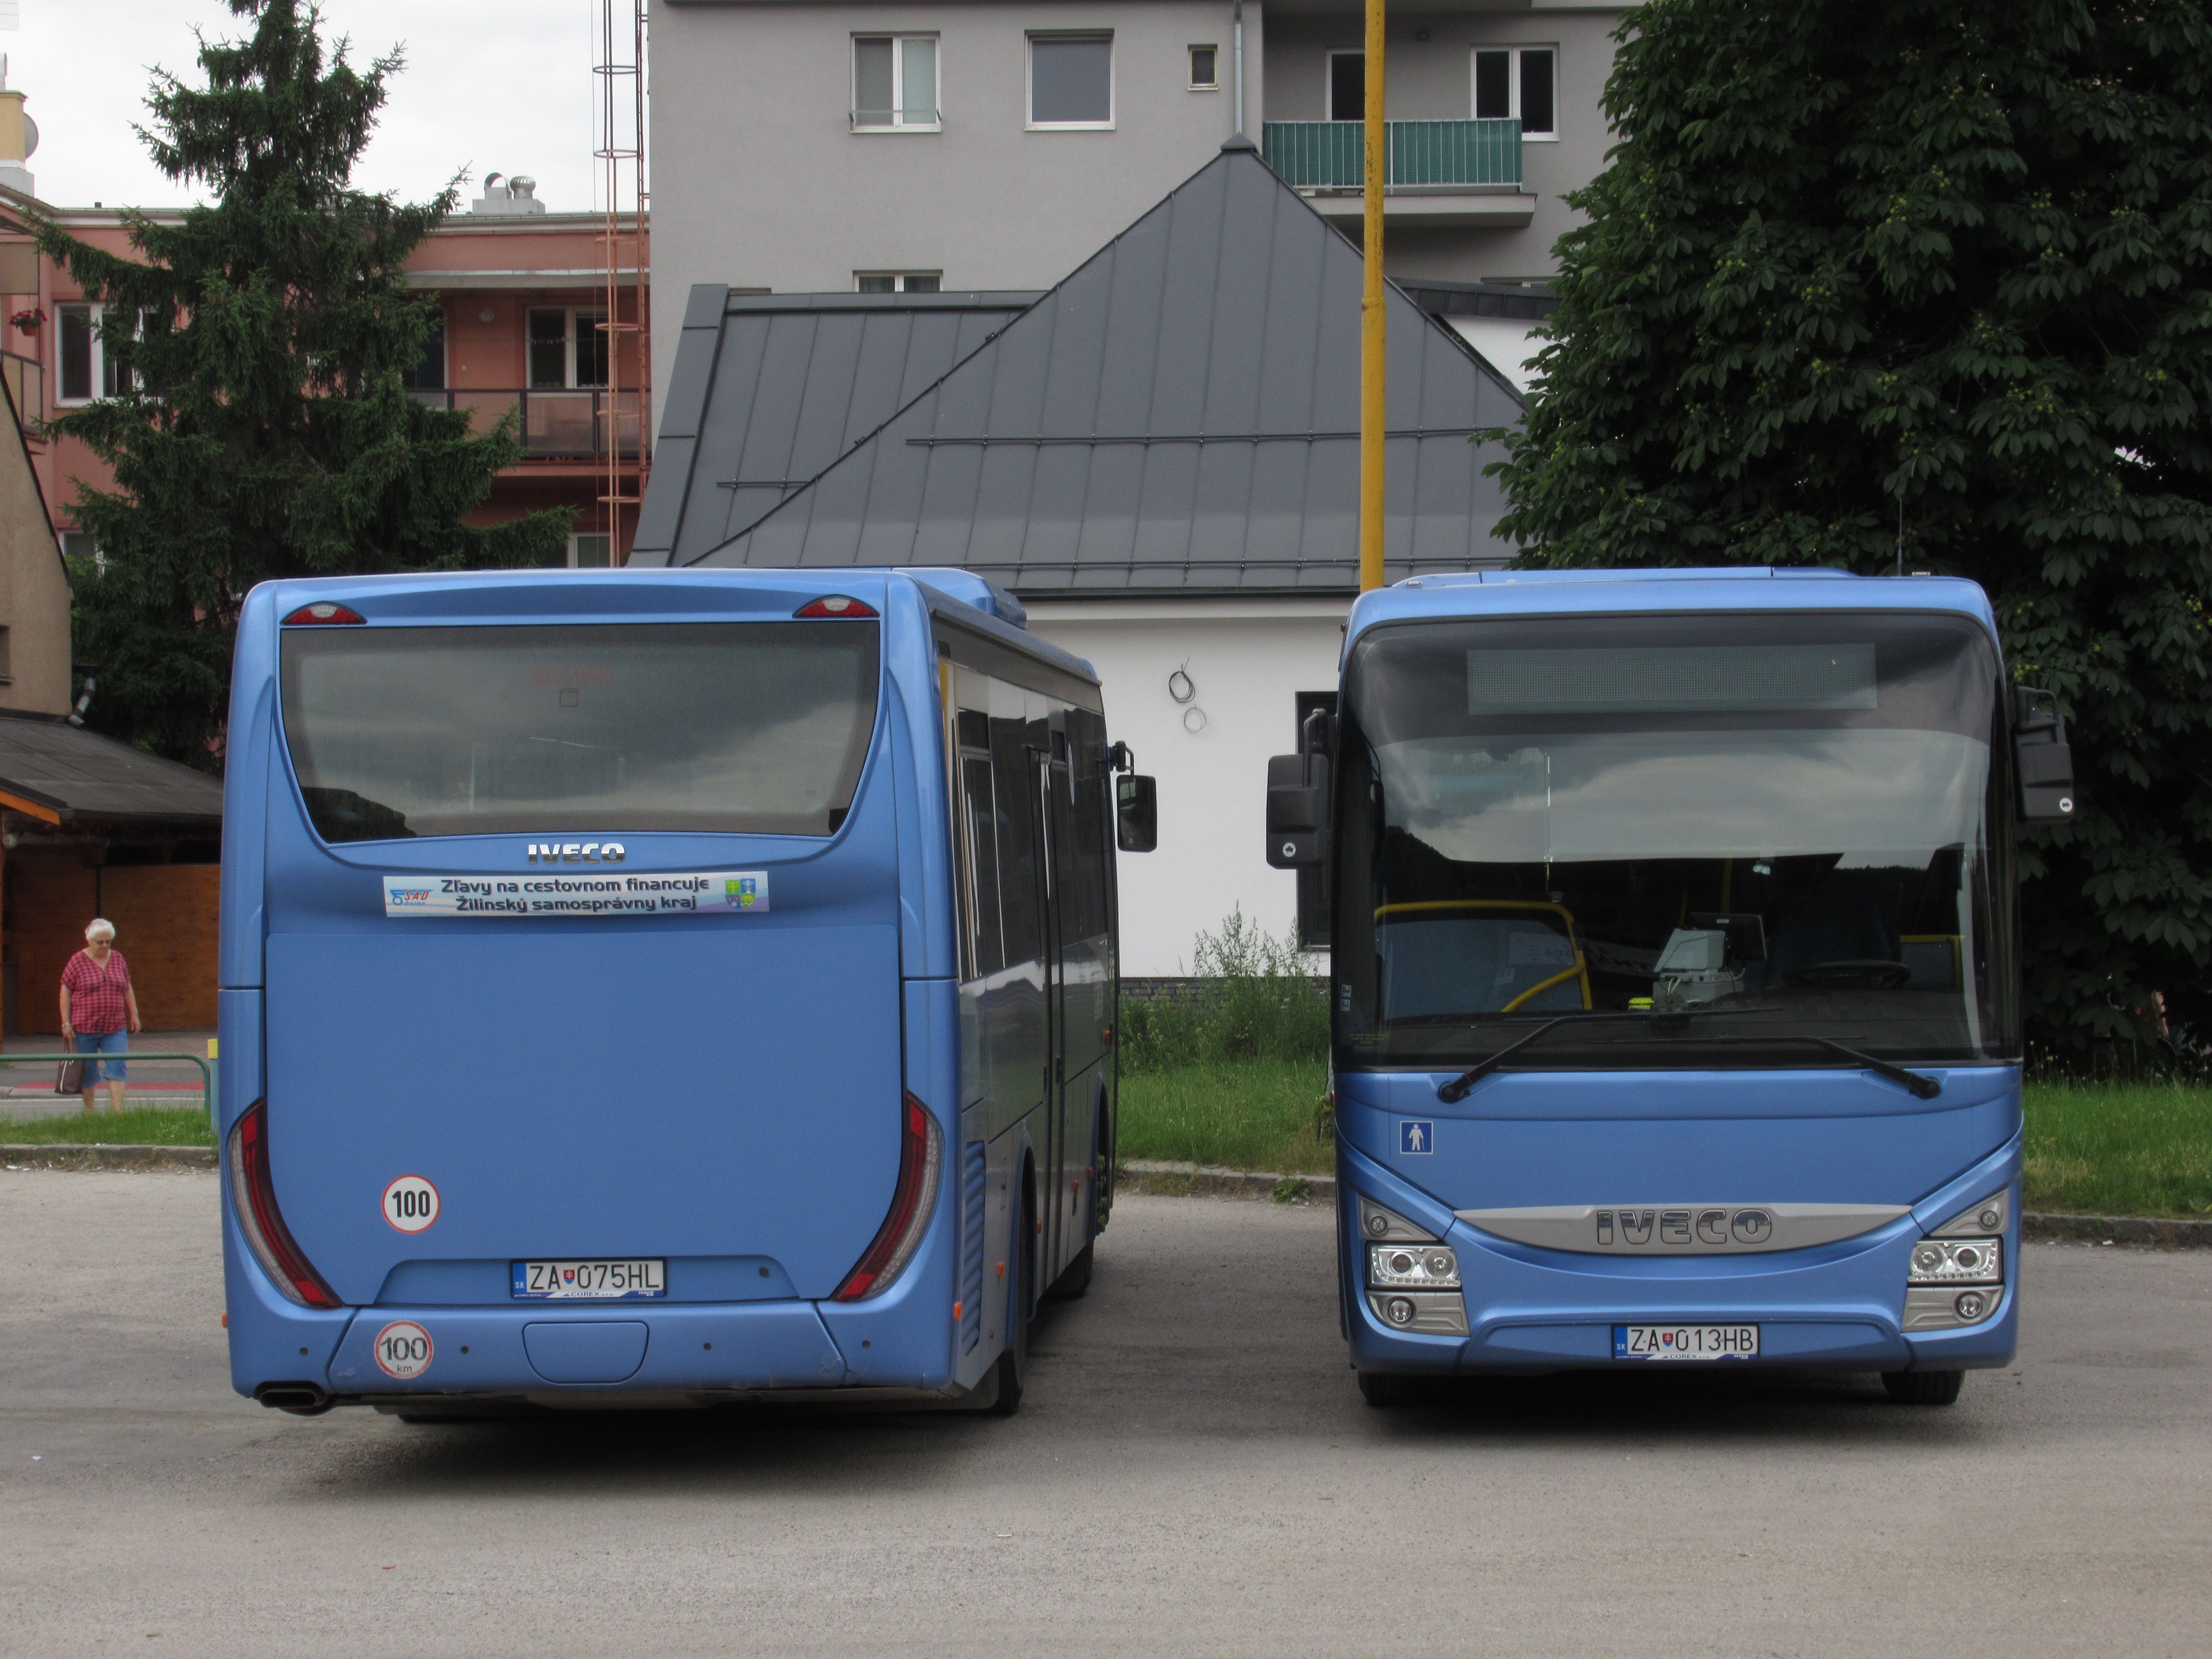 I v souèasné dobì pokraèuje obnova regionálních autobusù dopravce SAD Žilina pøevážnì vysokopodlažními autobusy Iveco Crossway Line o délce 10,8 metru. V roce 2017 poøídil tento dopravce 30 nových autobusù, v roce 2018 to bylo již 35 vozù. Menší podíl nových vozidel je již také èásteènì nízkopodlažní.